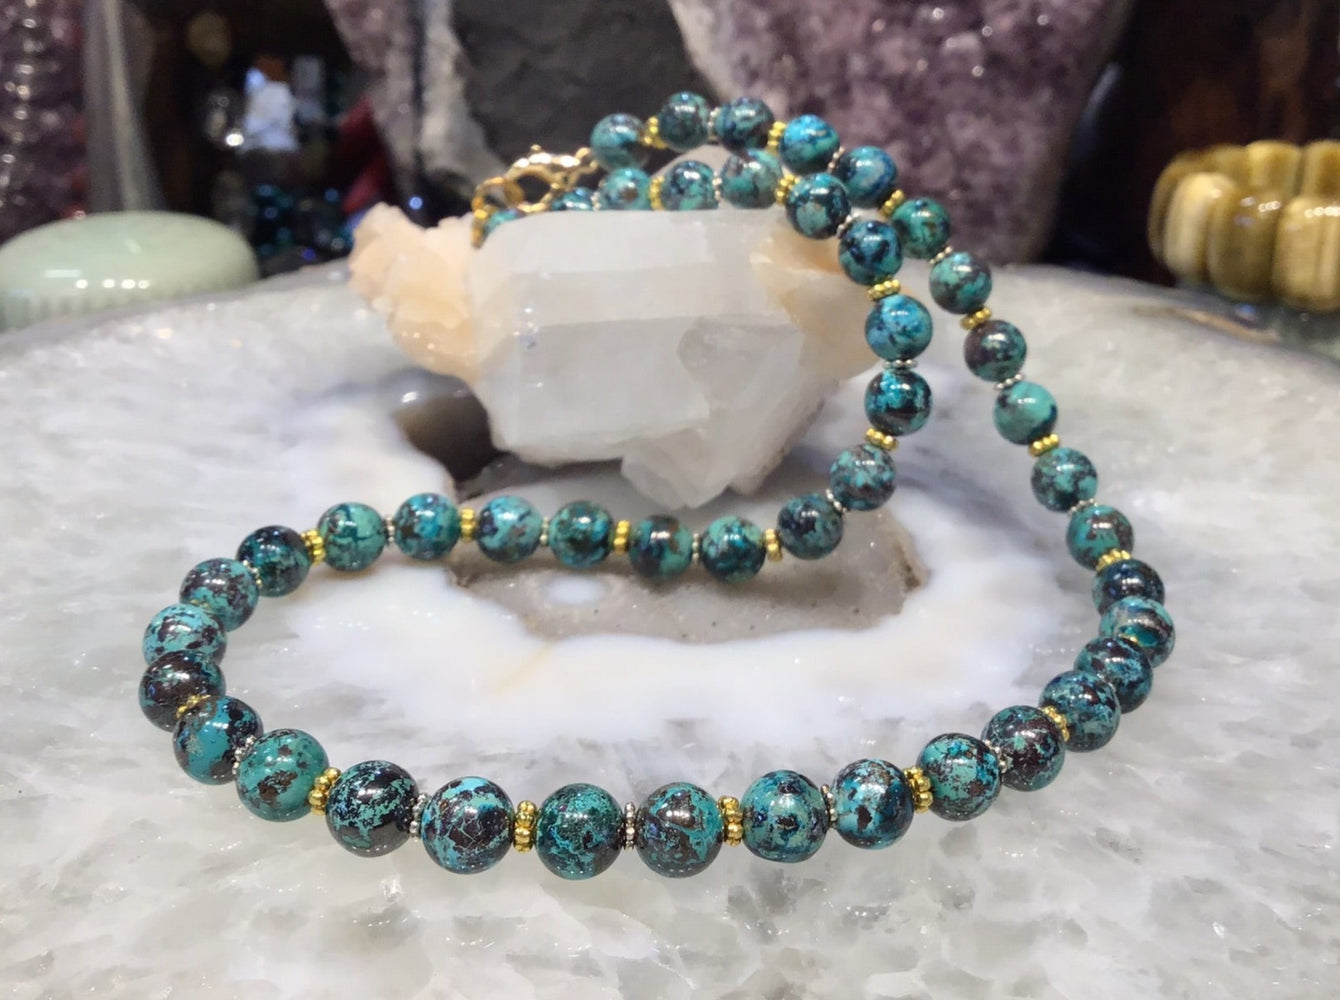 8mm Aqua Blue Chrysocolla Gemstone Necklace